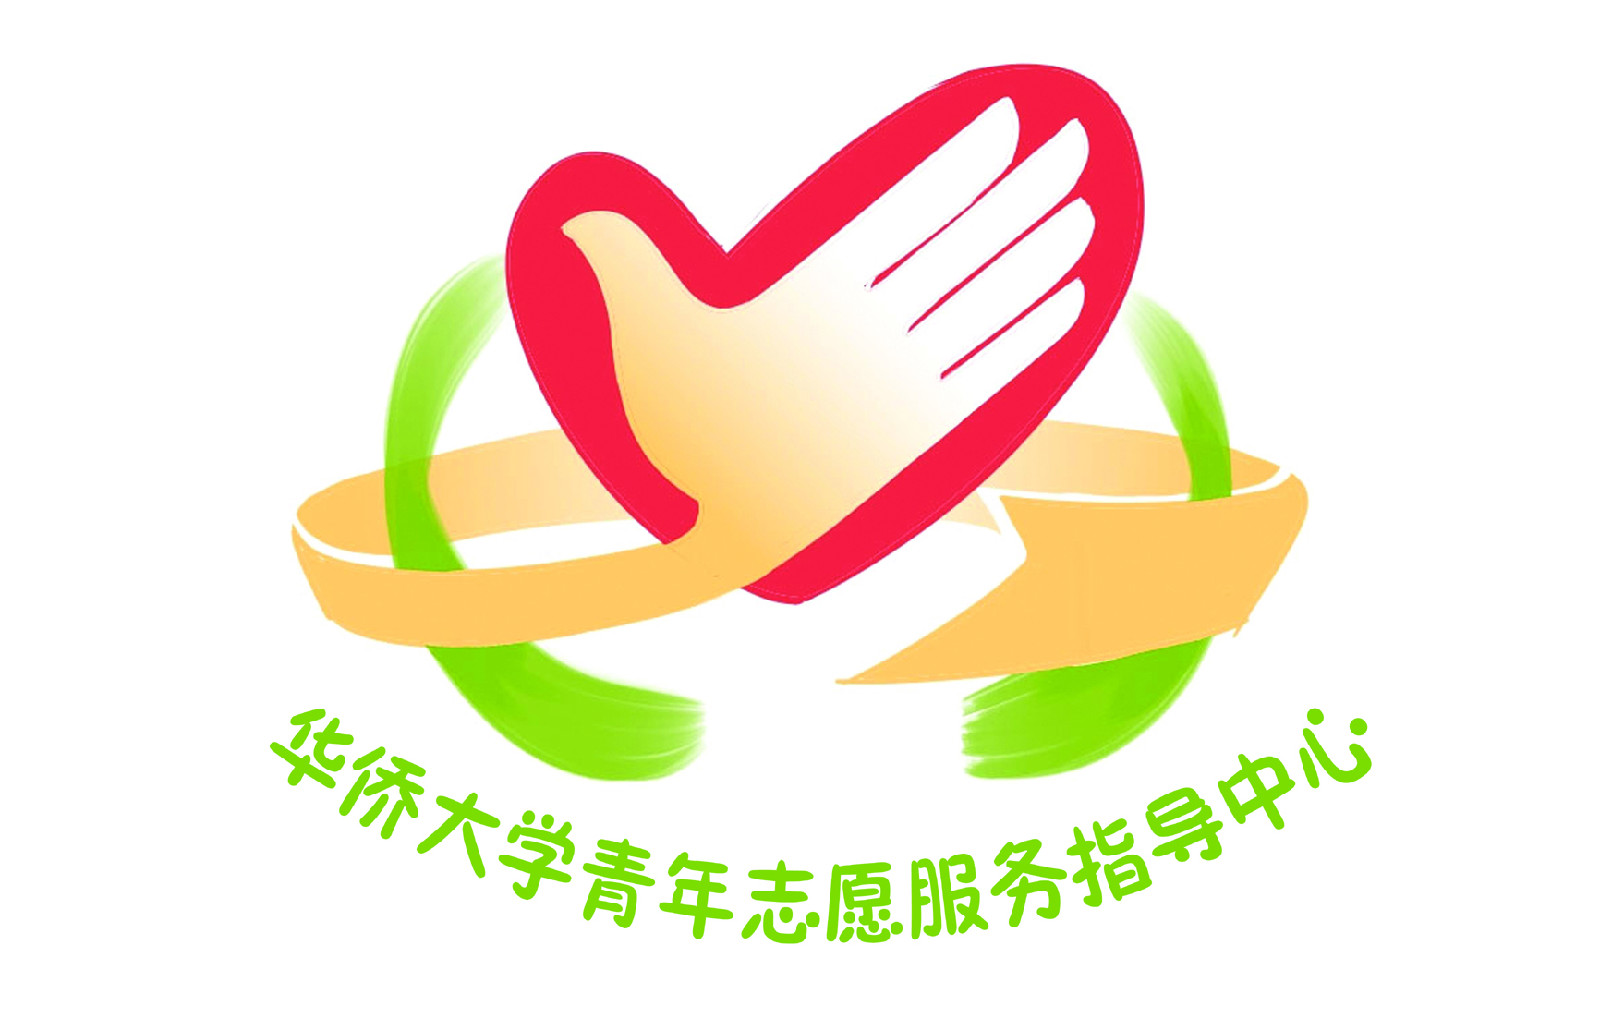 華僑大學青年志願服務指導中心